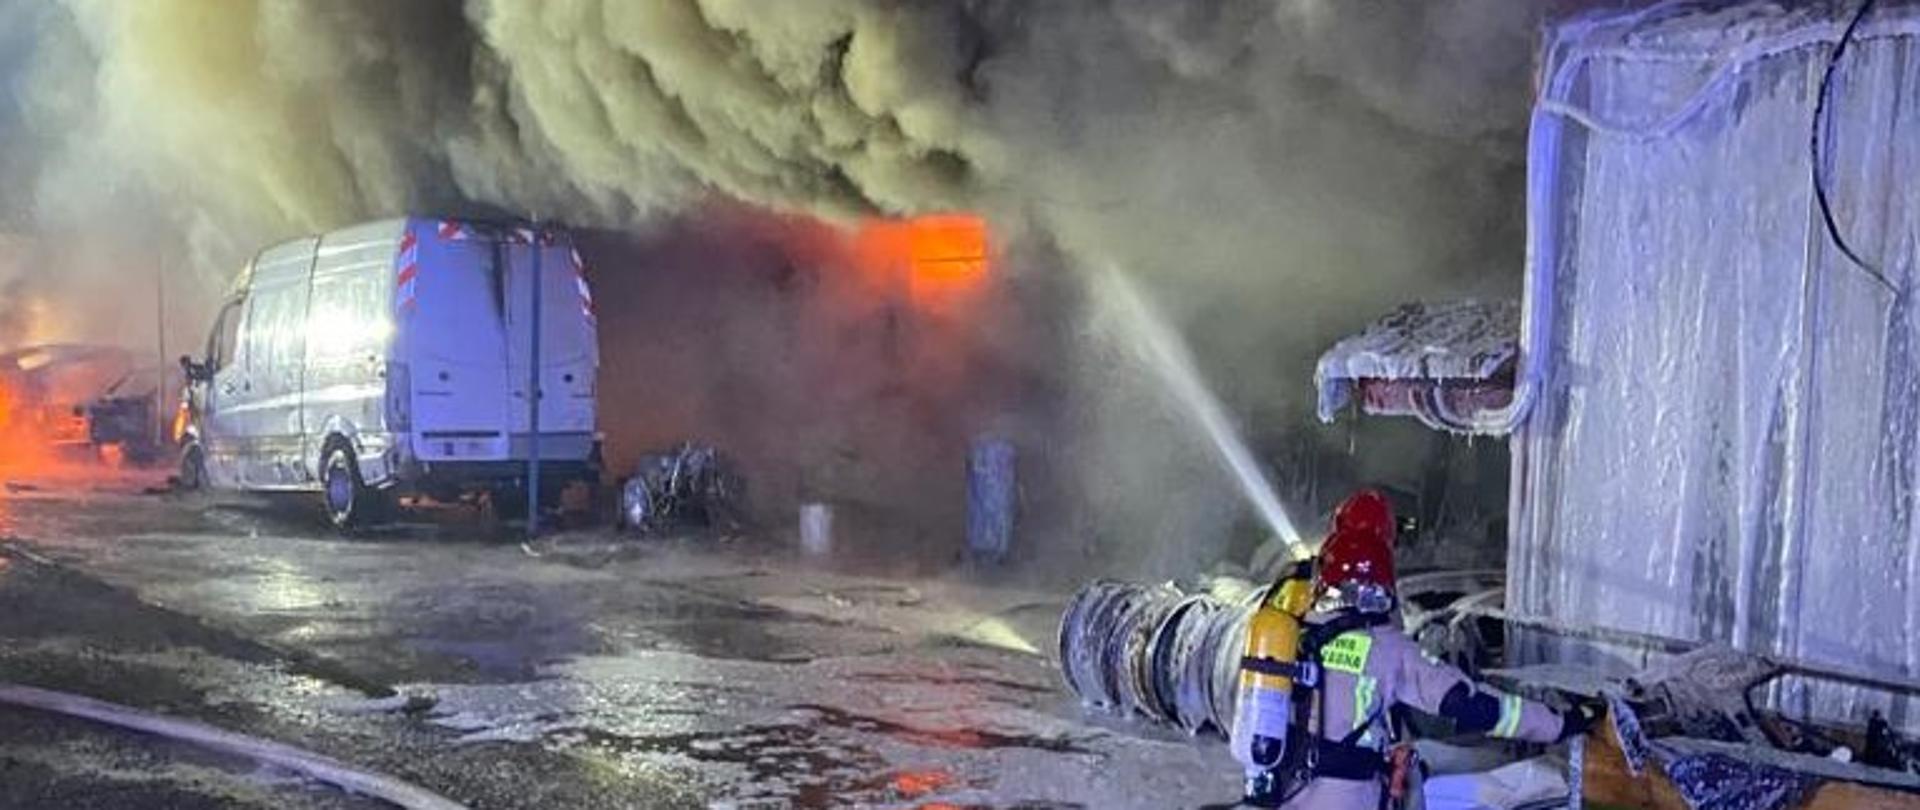 Zdjęcie przedstawia rozwinięty pożar warsztatu samochodowego. Po lewej stronie stoi zniszczony przez ogień samochód dostawczy. W głębi widać palący się ogień oraz kłęby gęstego dymu. Po prawej stronie dwóch ratowników podaje wodę zza przeszkody terenowej. 